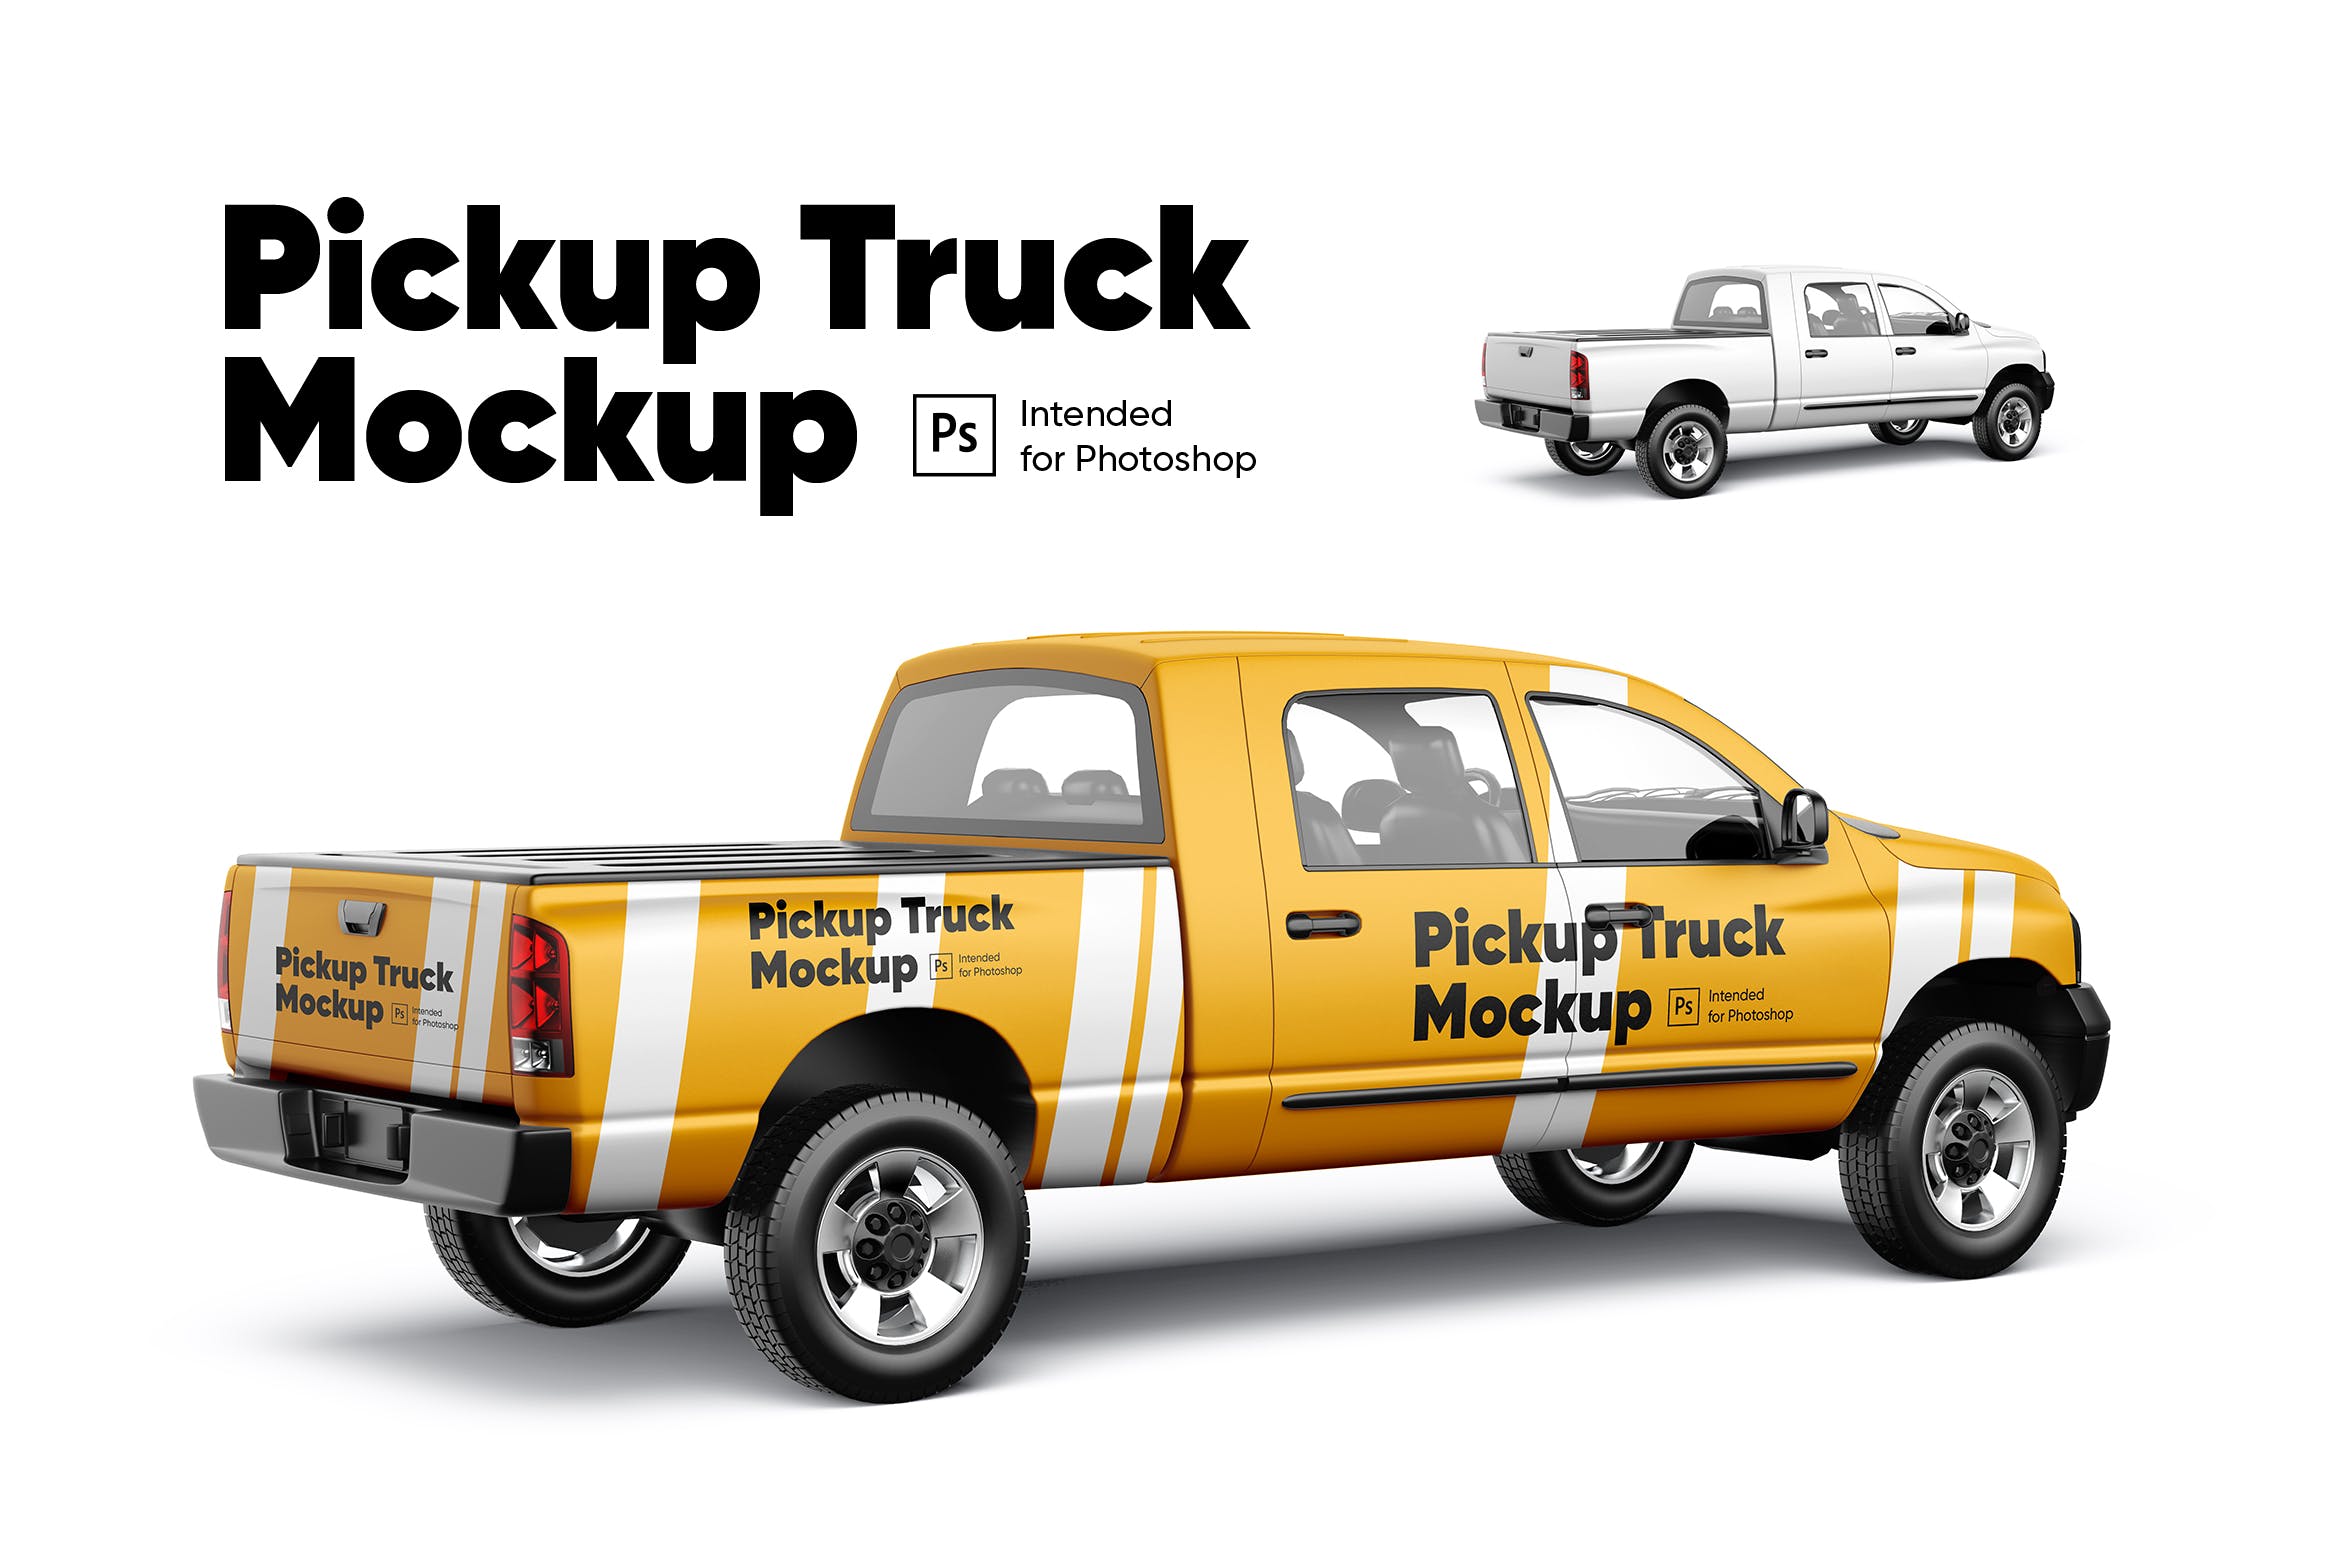 车身广告设计样机模板v2 Pickup Truck Mockup 02设计素材模板